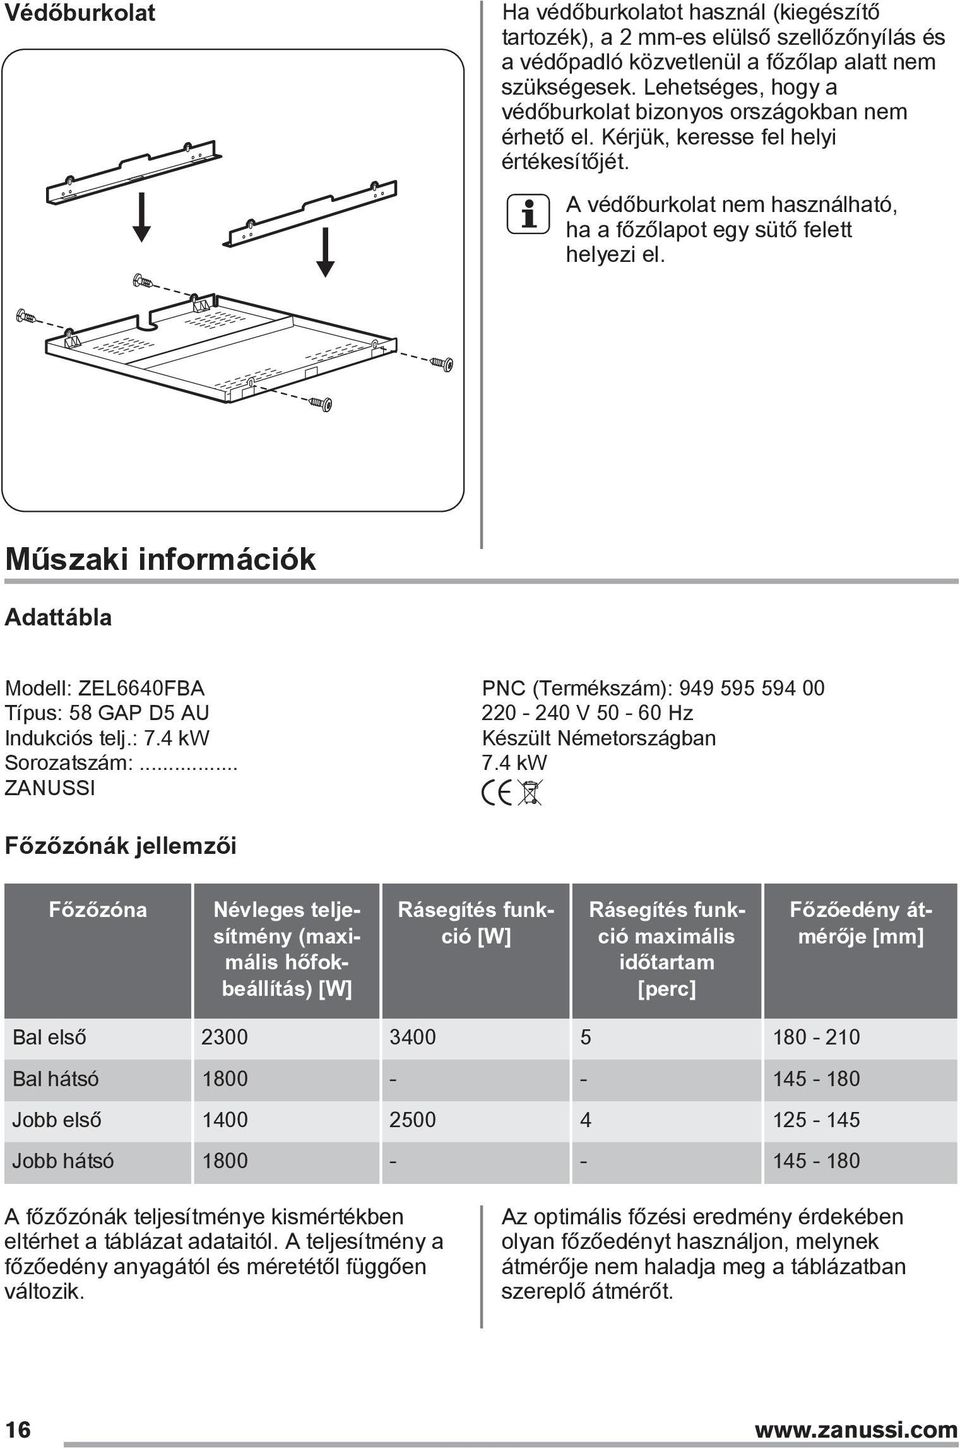 Műszaki információk Adattábla Modell: ZEL6640FBA PNC (Termékszám): 949 595 594 00 Típus: 58 GAP D5 AU 220-240 V 50-60 Hz Indukciós telj.: 7.